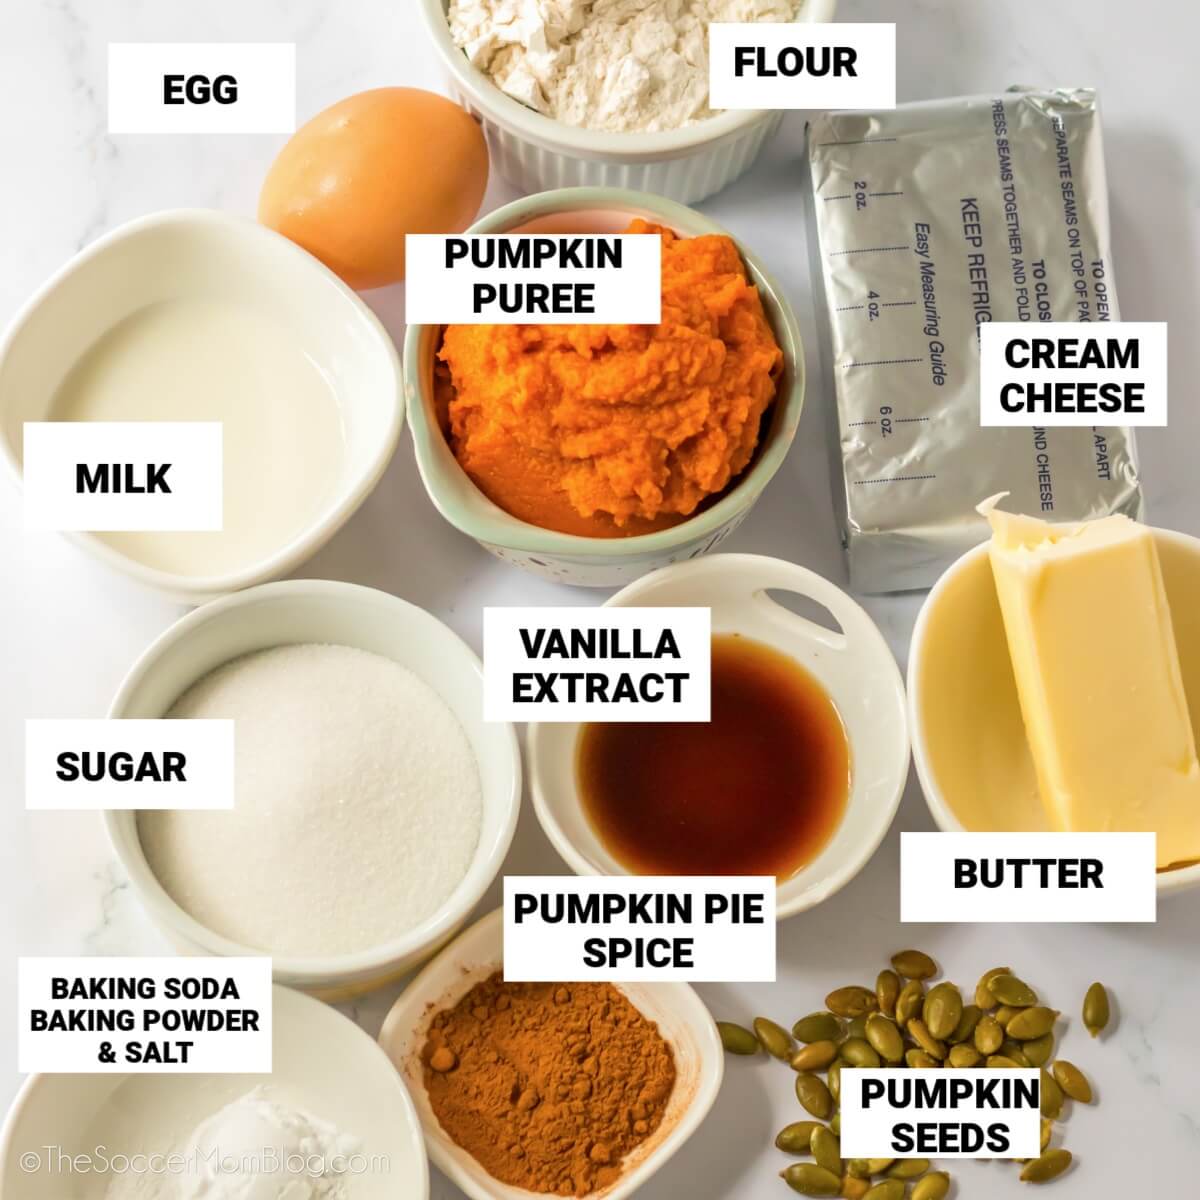 ingredients to make Starbucks pumpkin muffins, with text labels: egg, flour, pumpkin, milk, cream cheese, vanilla, sugar, butter, baking soda, baking powder, salt, pumpkin spice, pumpkin seeds